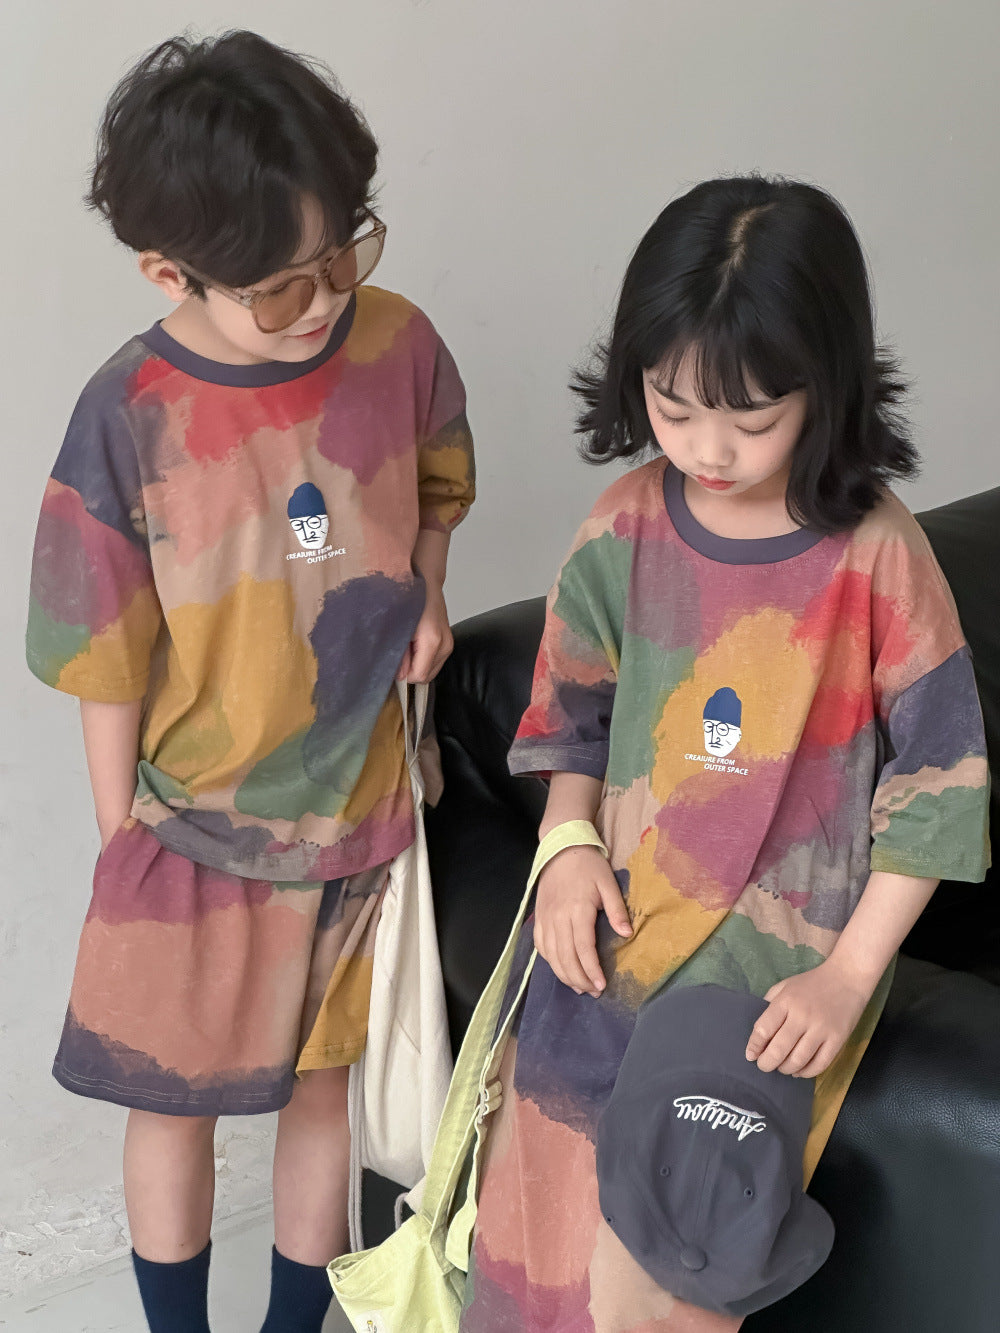 【D4040918】夏季款 兒童套裝 字母塗鴉長款T恤洋裝裙 短袖短褲兩件套-2款